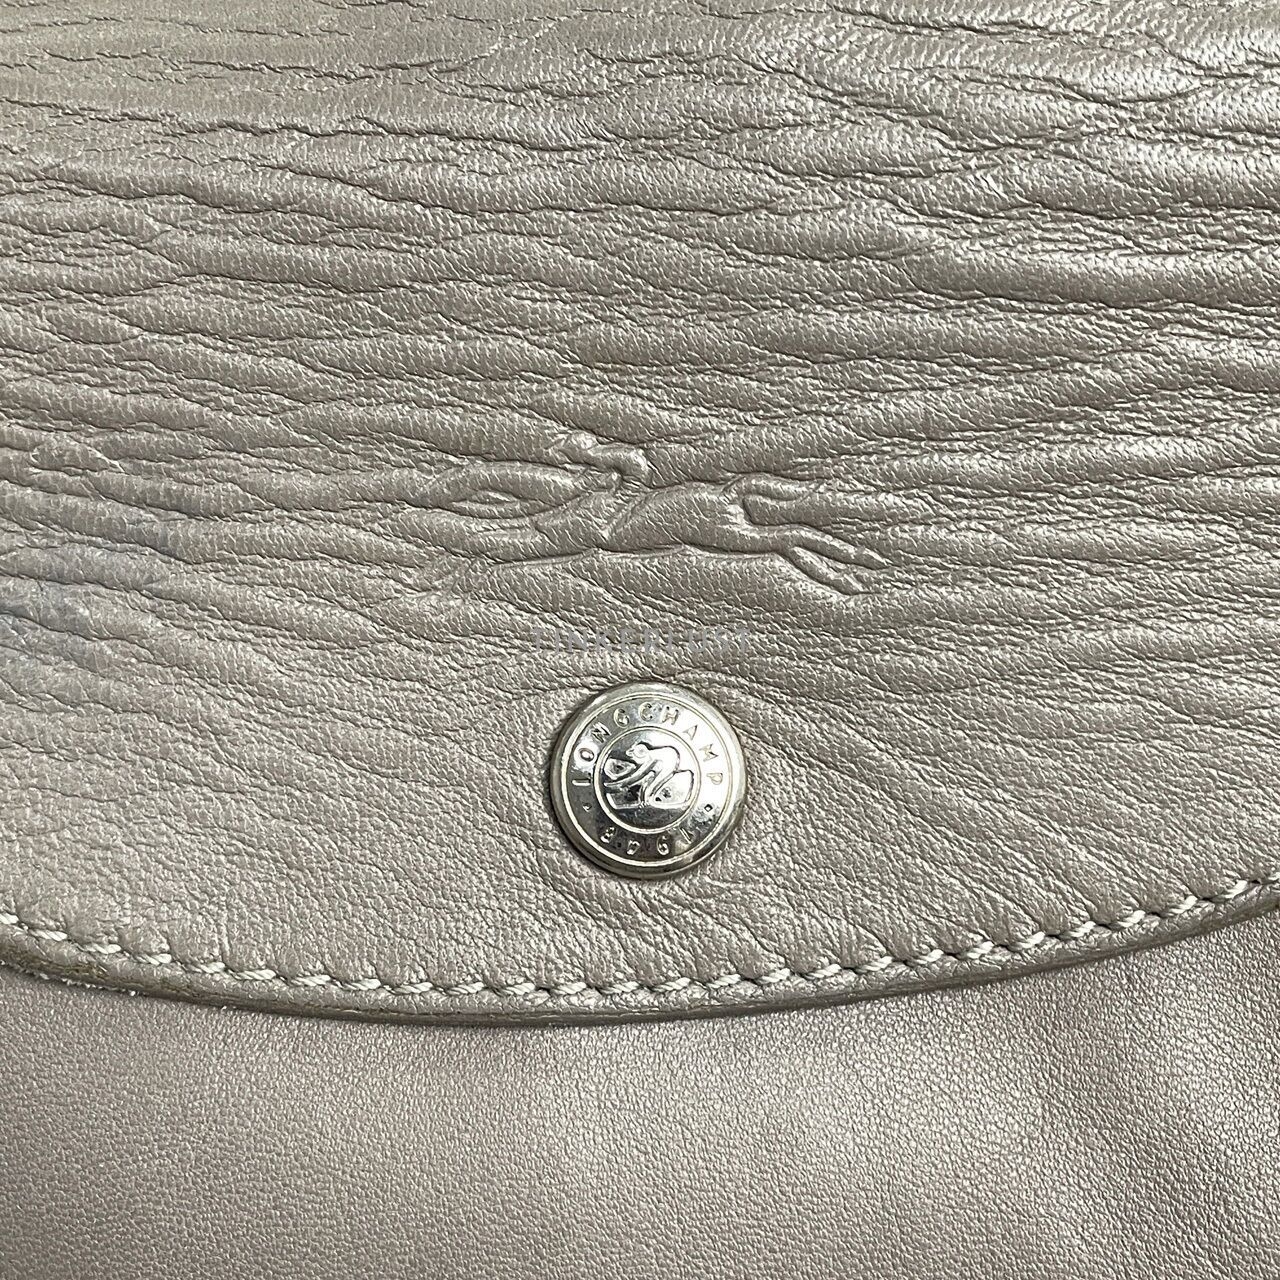 Longchamp Le pliage Grey Leather SHW Satchel